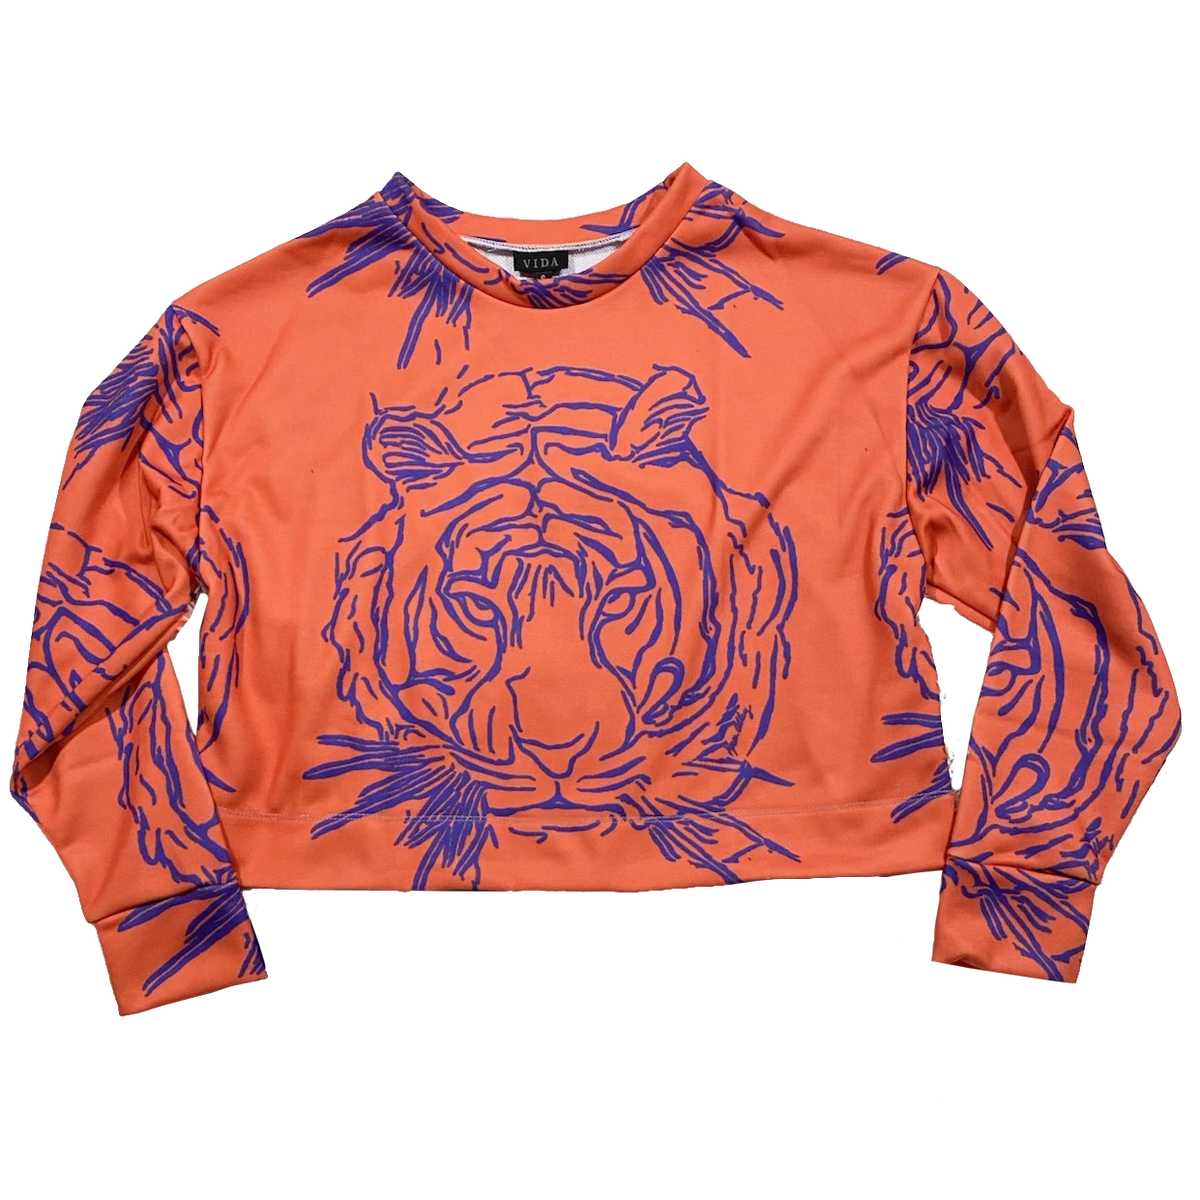 Karen Alley Orange Cropped Shirt - Tiger Knickerbocker Mr. Purple Print with